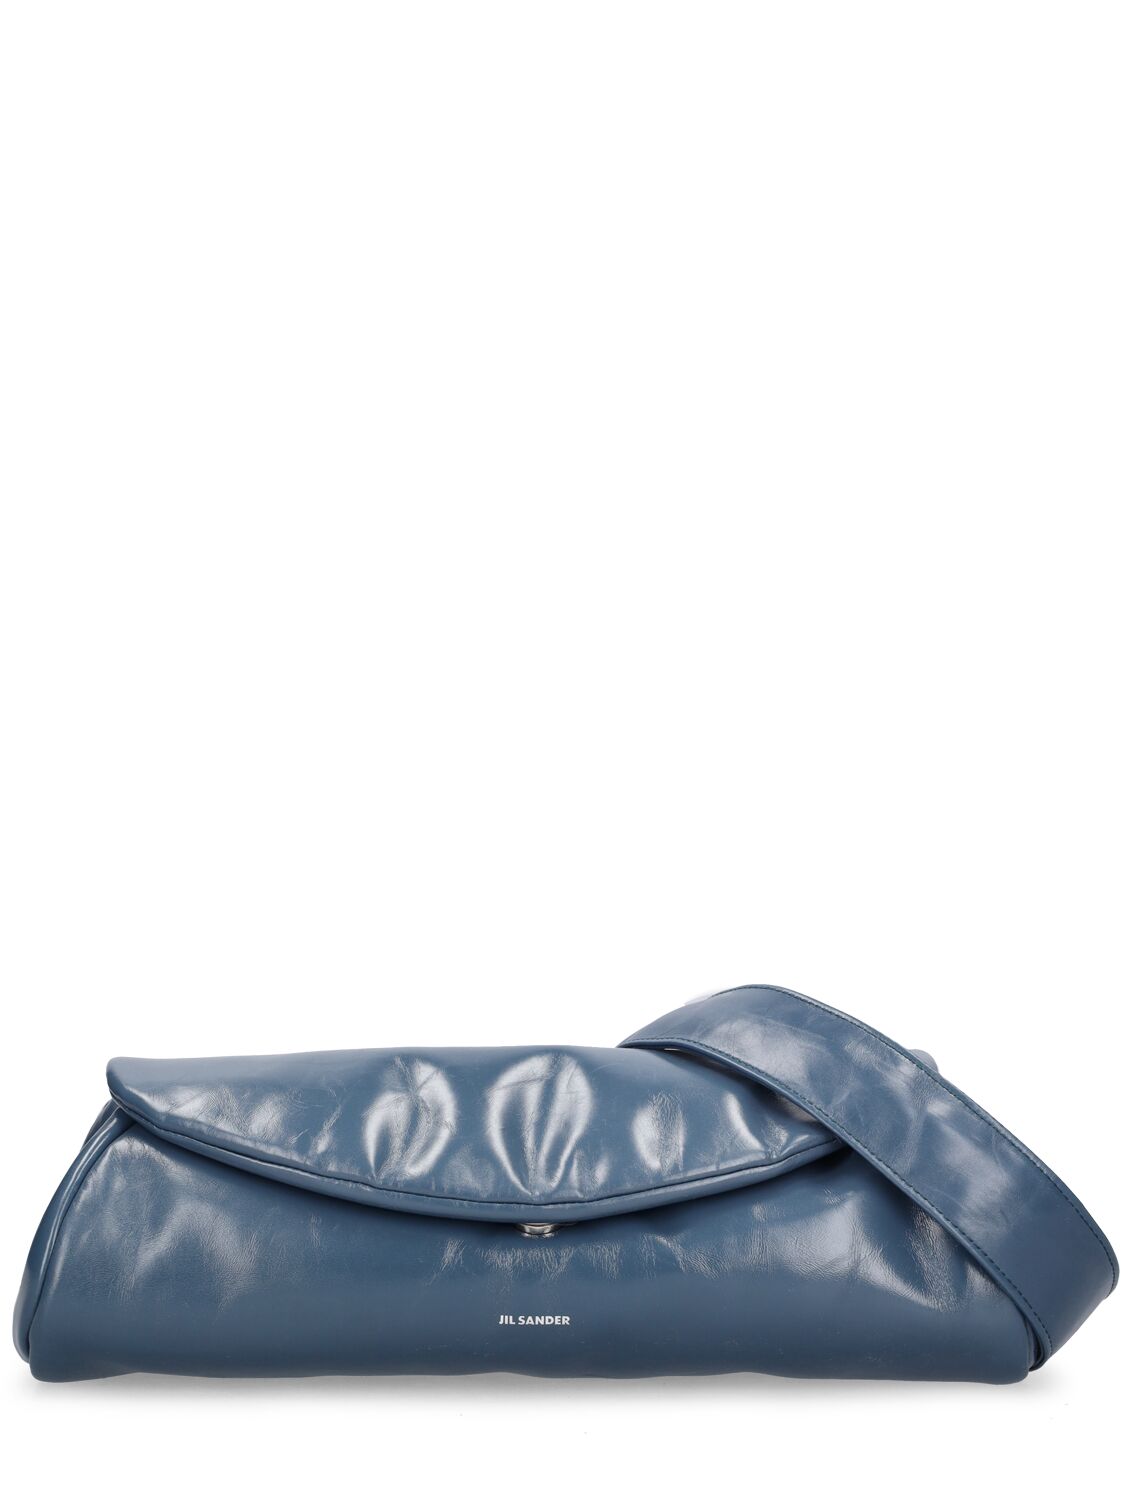 Jil Sander Women's Grande Cannolo Leather Shoulder Bag In Sea Blue